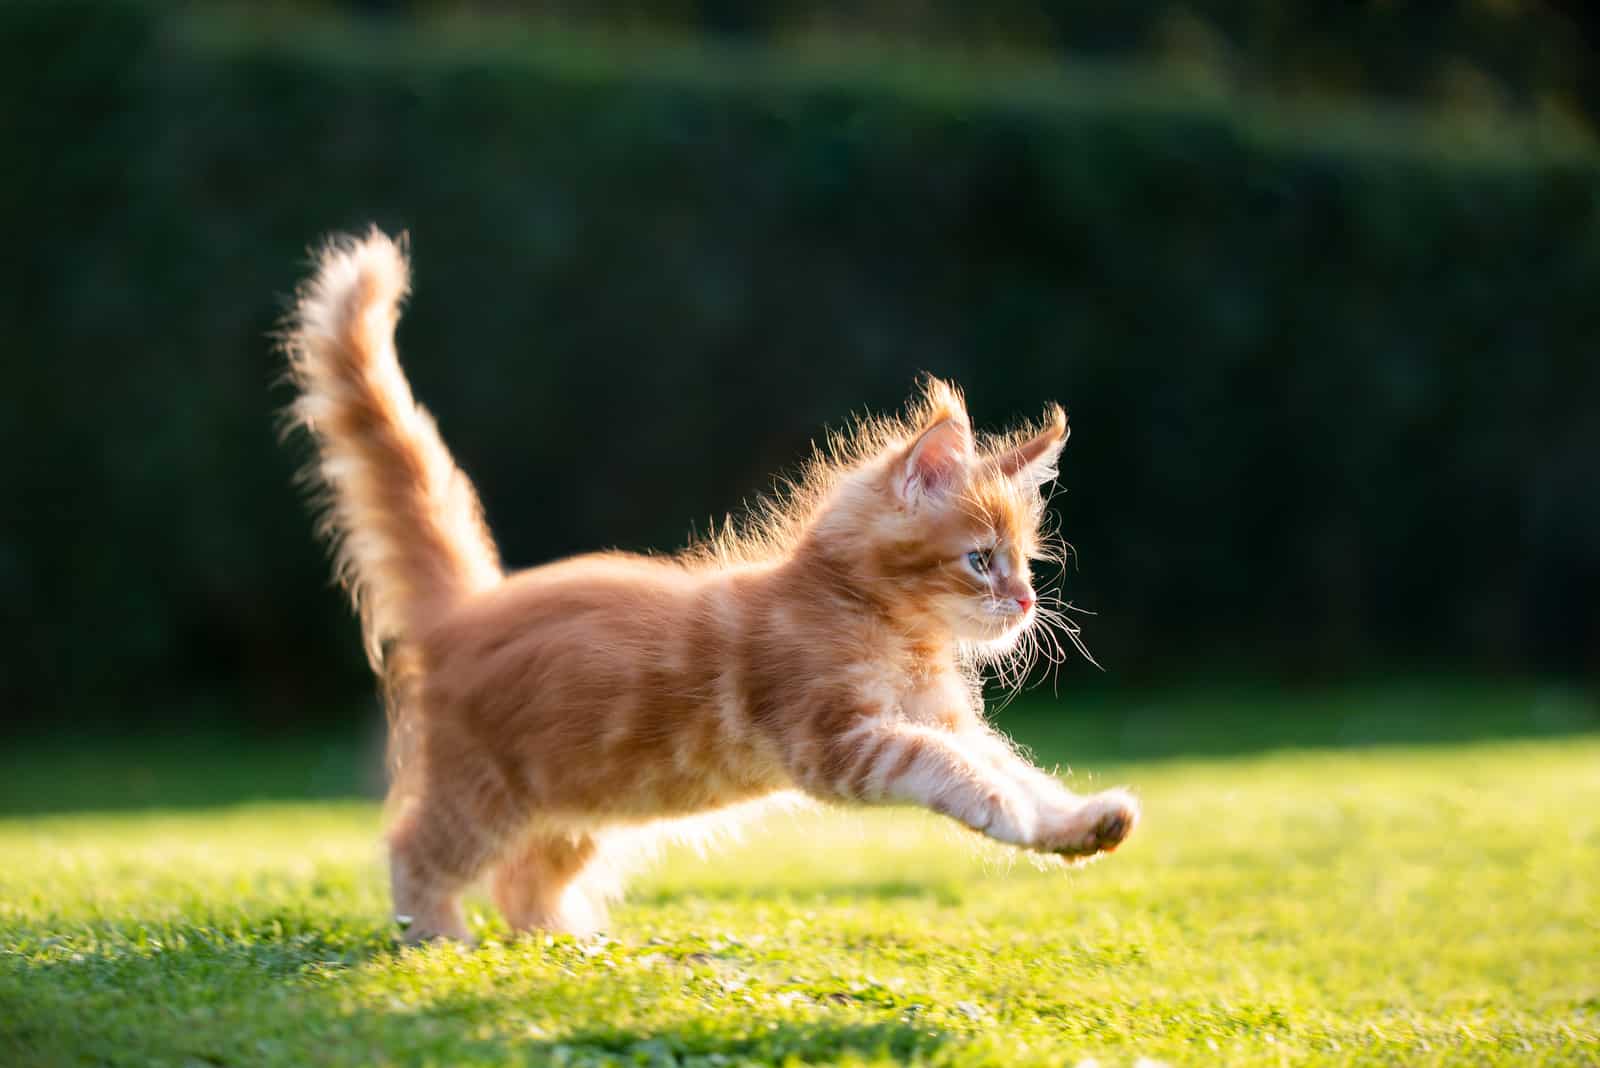 a cute kitten running across the field